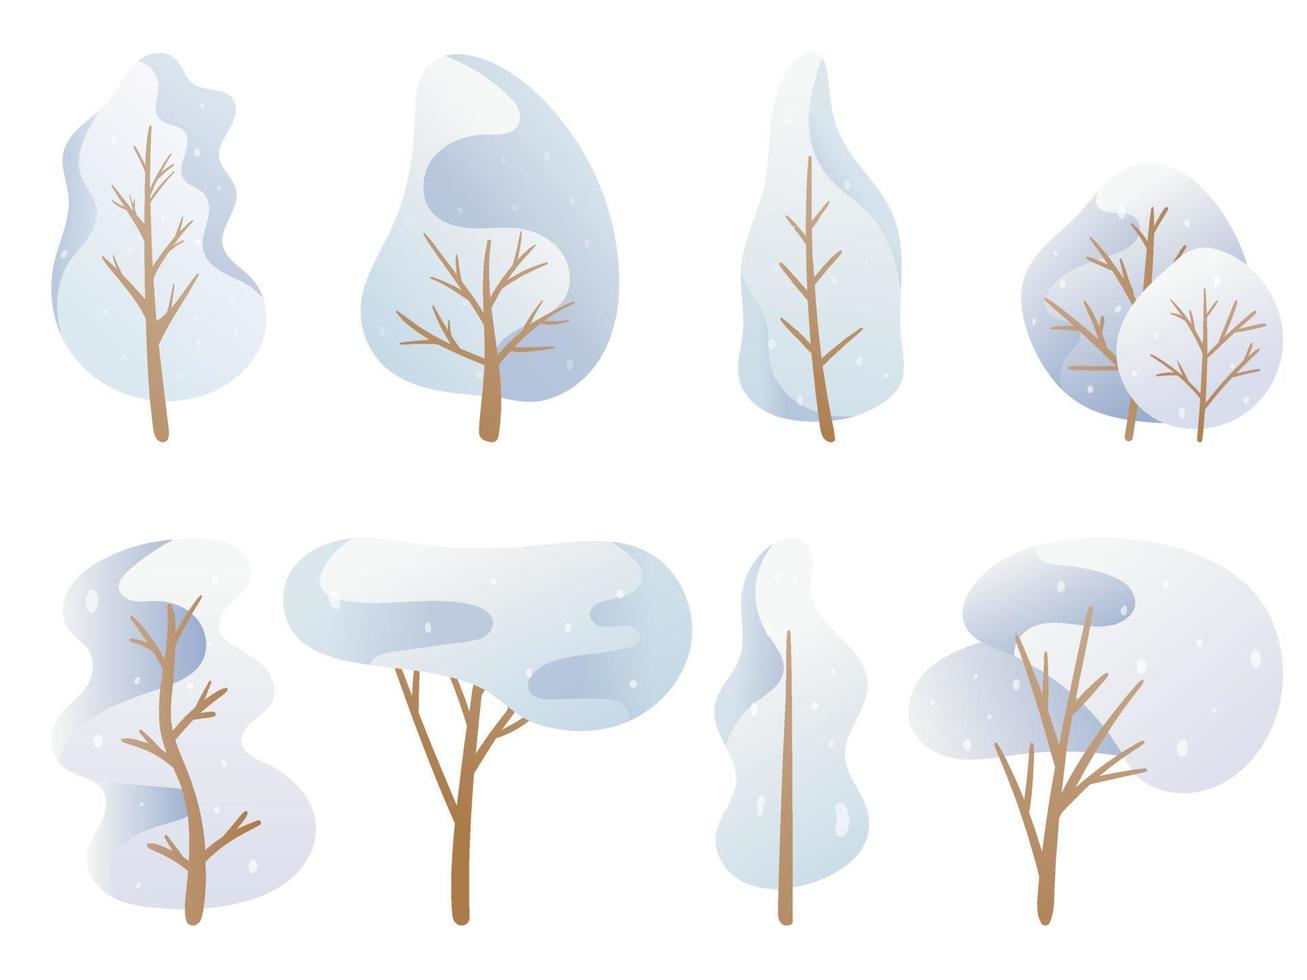 illustration vectorielle. un ensemble d'images de griffonnage. arbres de dessin animé dans une palette bleue, couronne d'hiver enneigée de différentes formes. décoration de fond vecteur